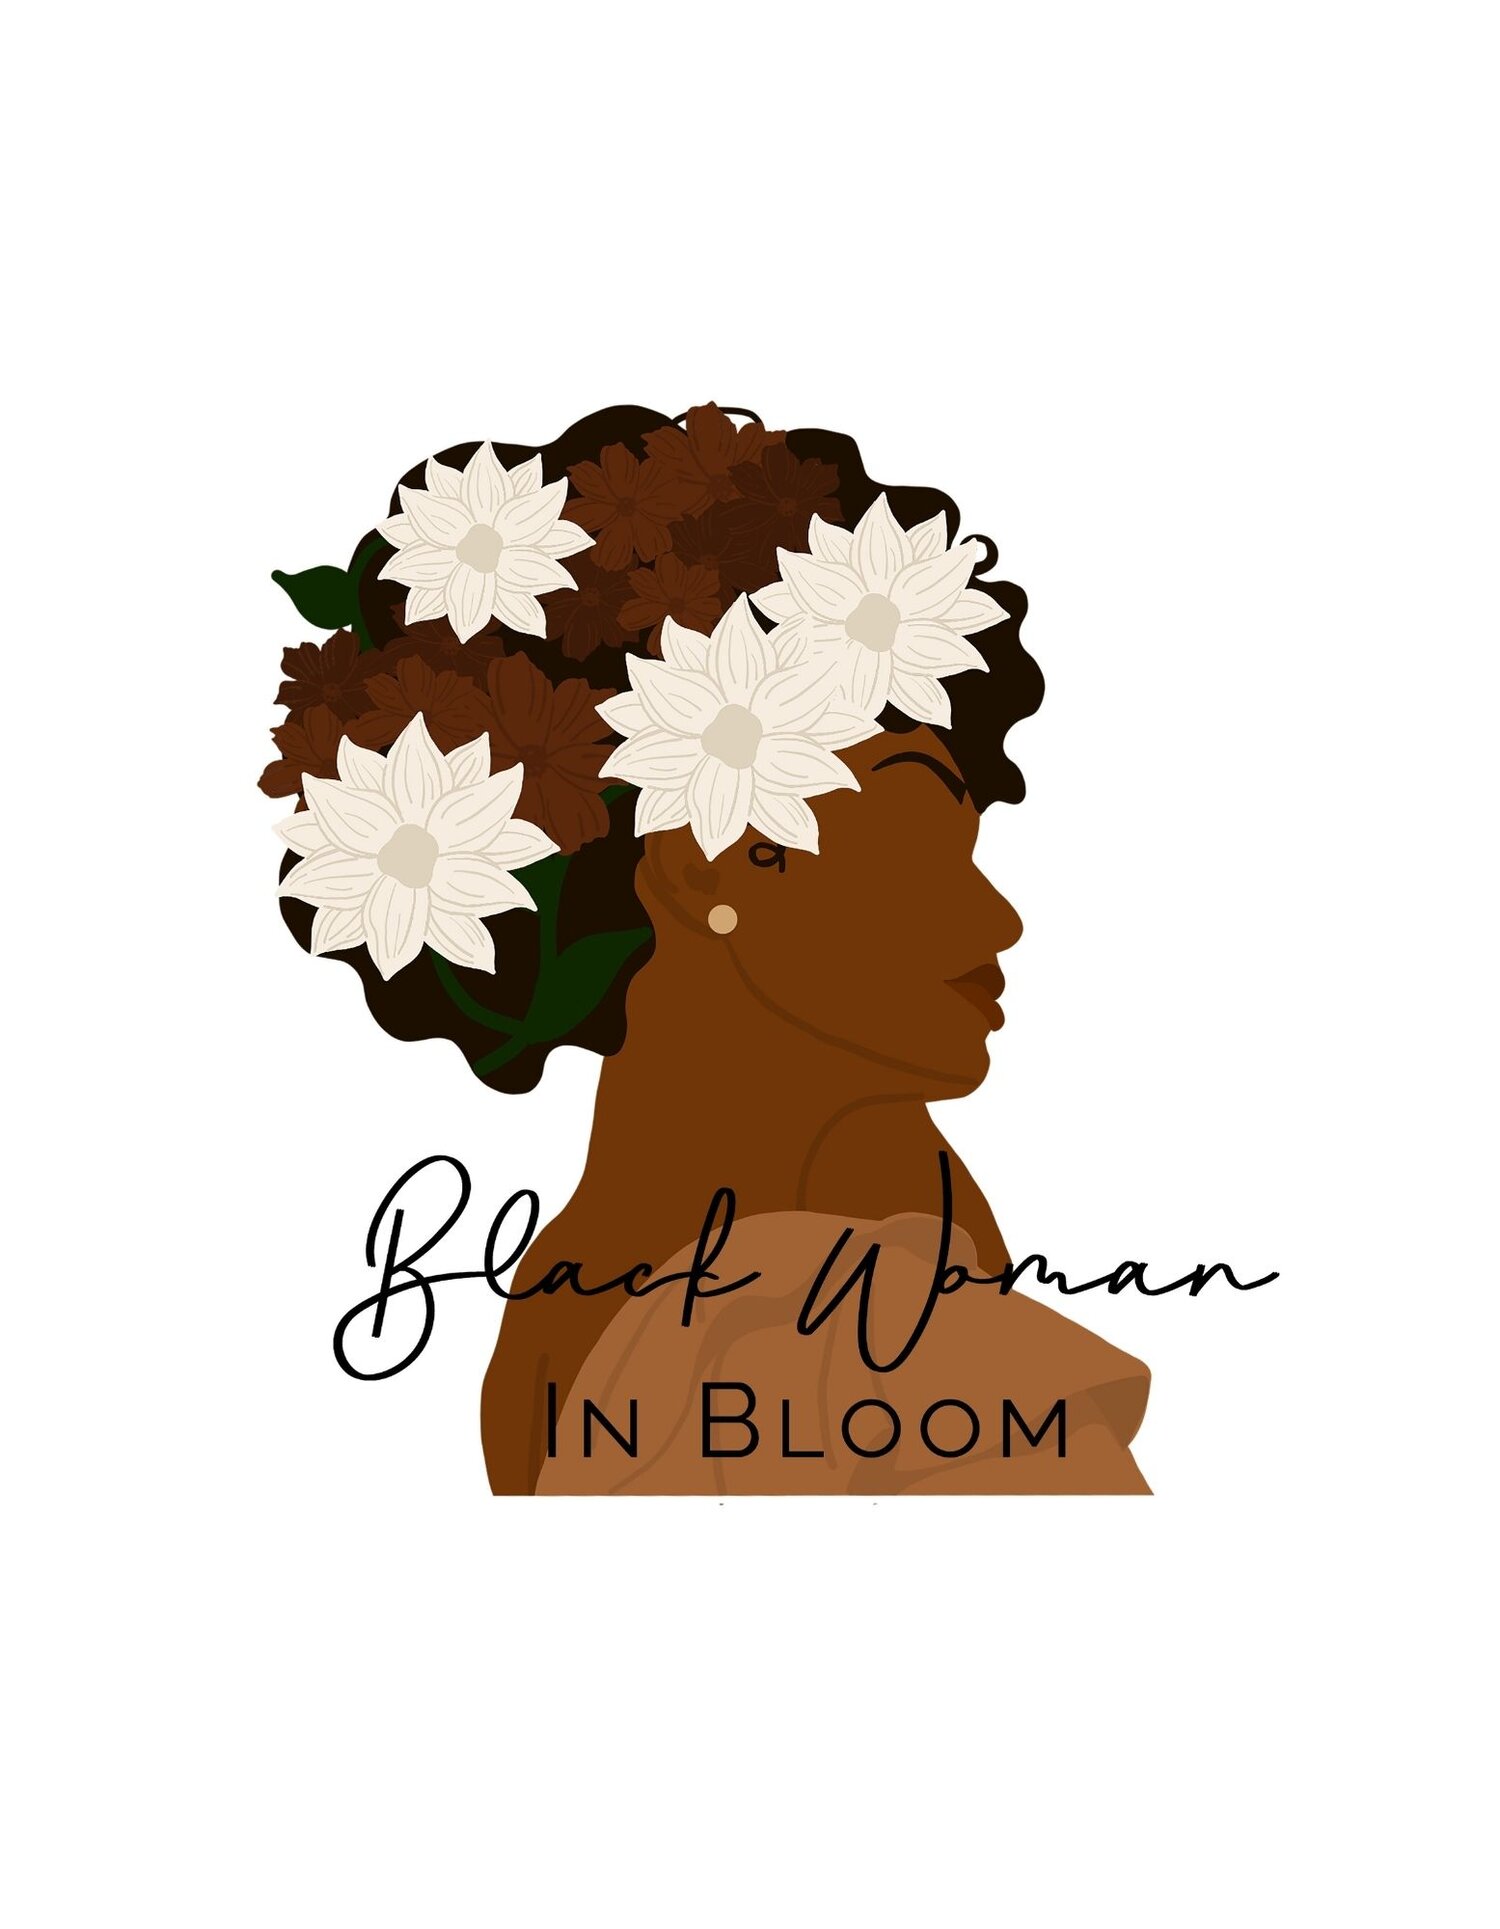 Black Woman In Bloom